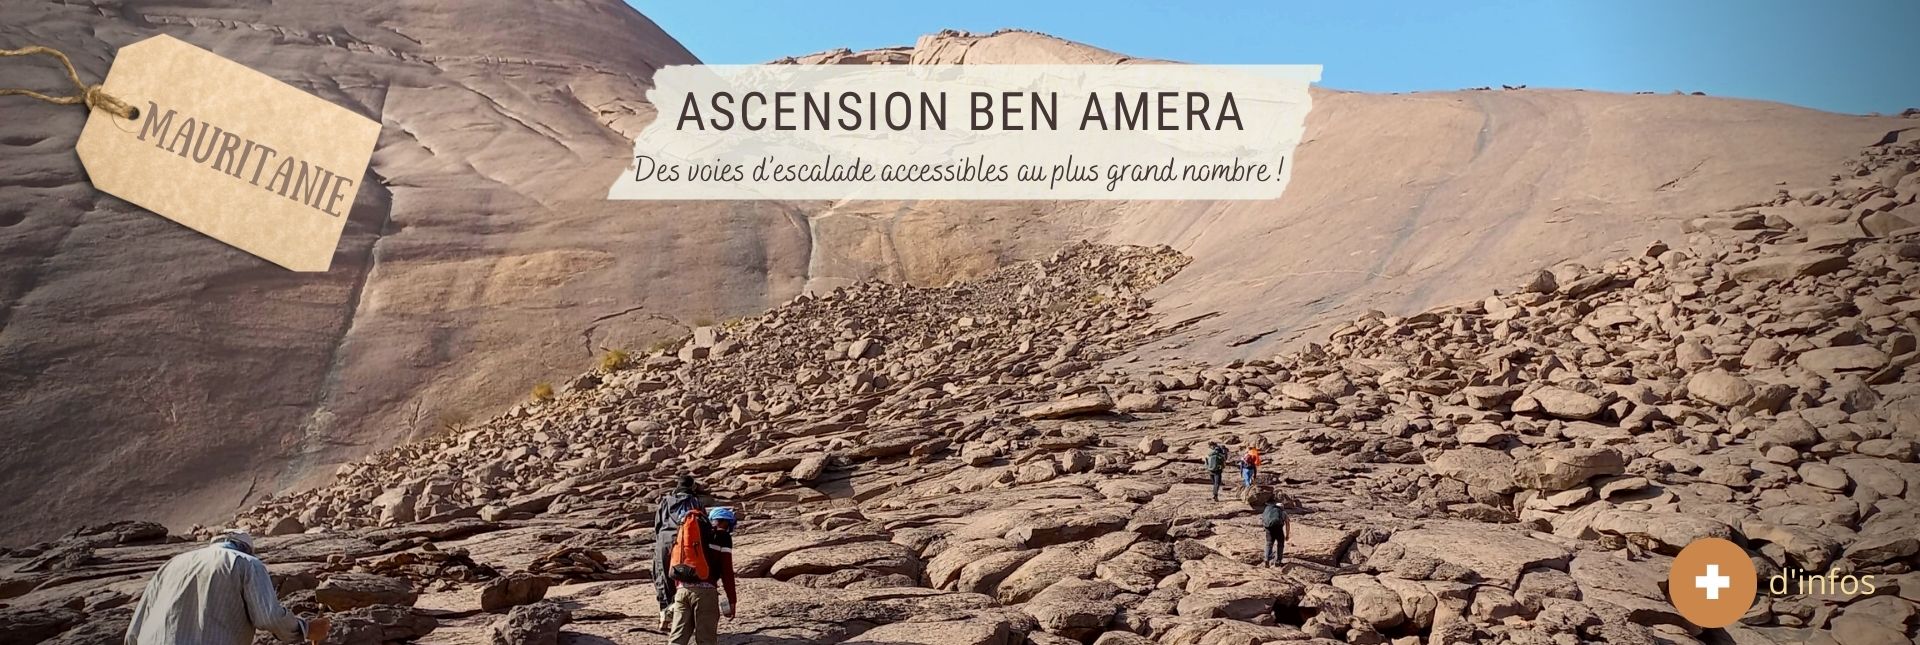 Ascension Monolithe de Ben Amera